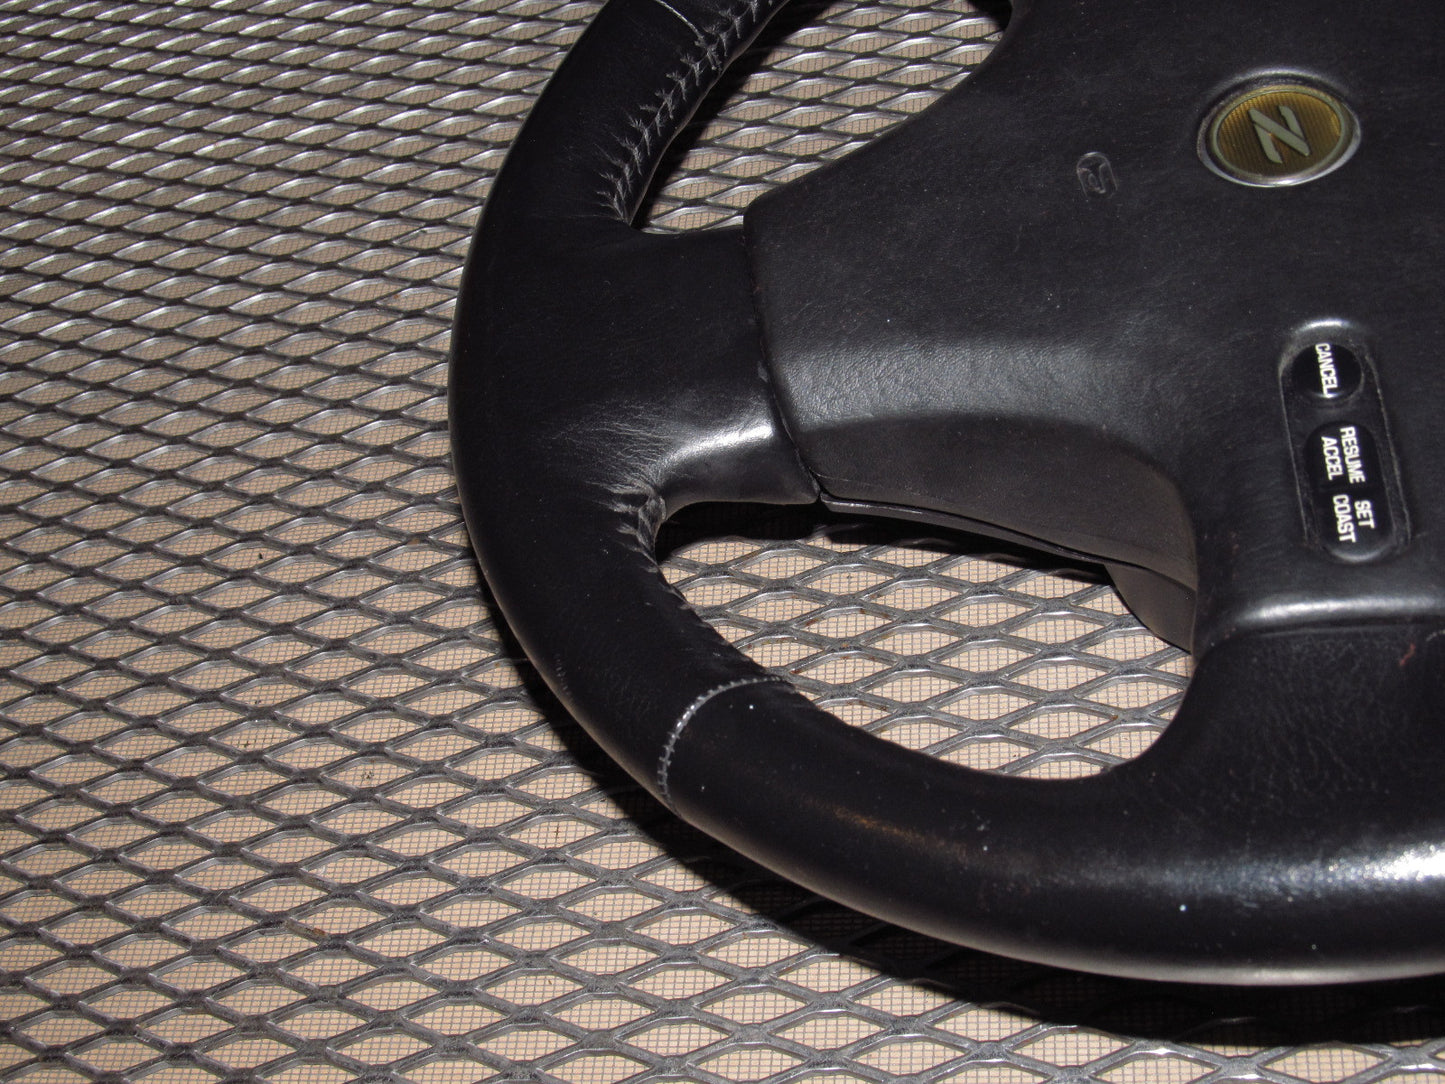 90-96 Nissan 300zx OEM Steering Wheel Assembly